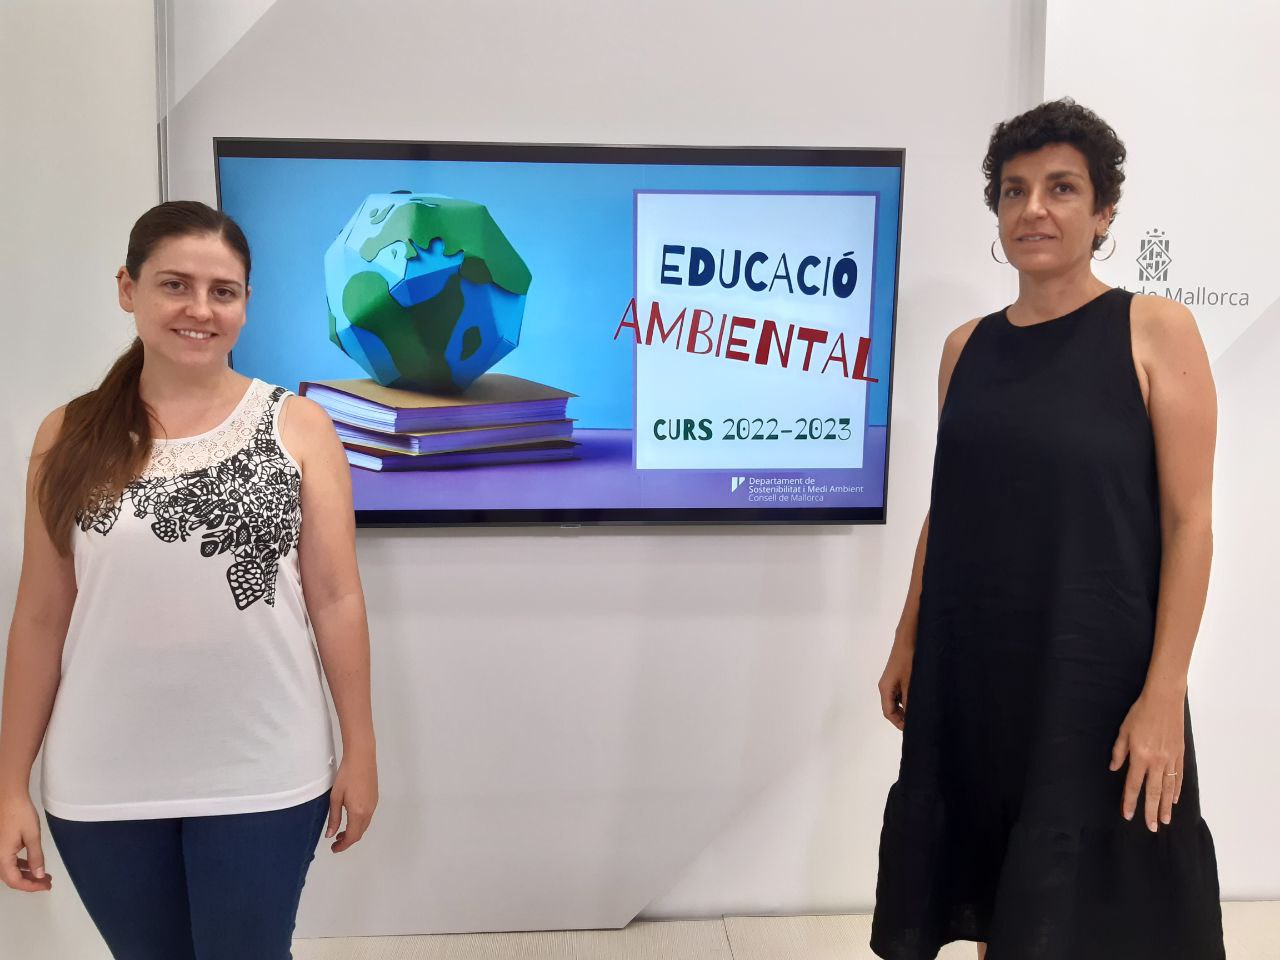 La vicepresidenta del Consell de Mallorca i consellera de Sostenibilitat i Medi Ambient, Aurora Ribot i la directora insular de Medi Ambient, Inmaculada Férriz